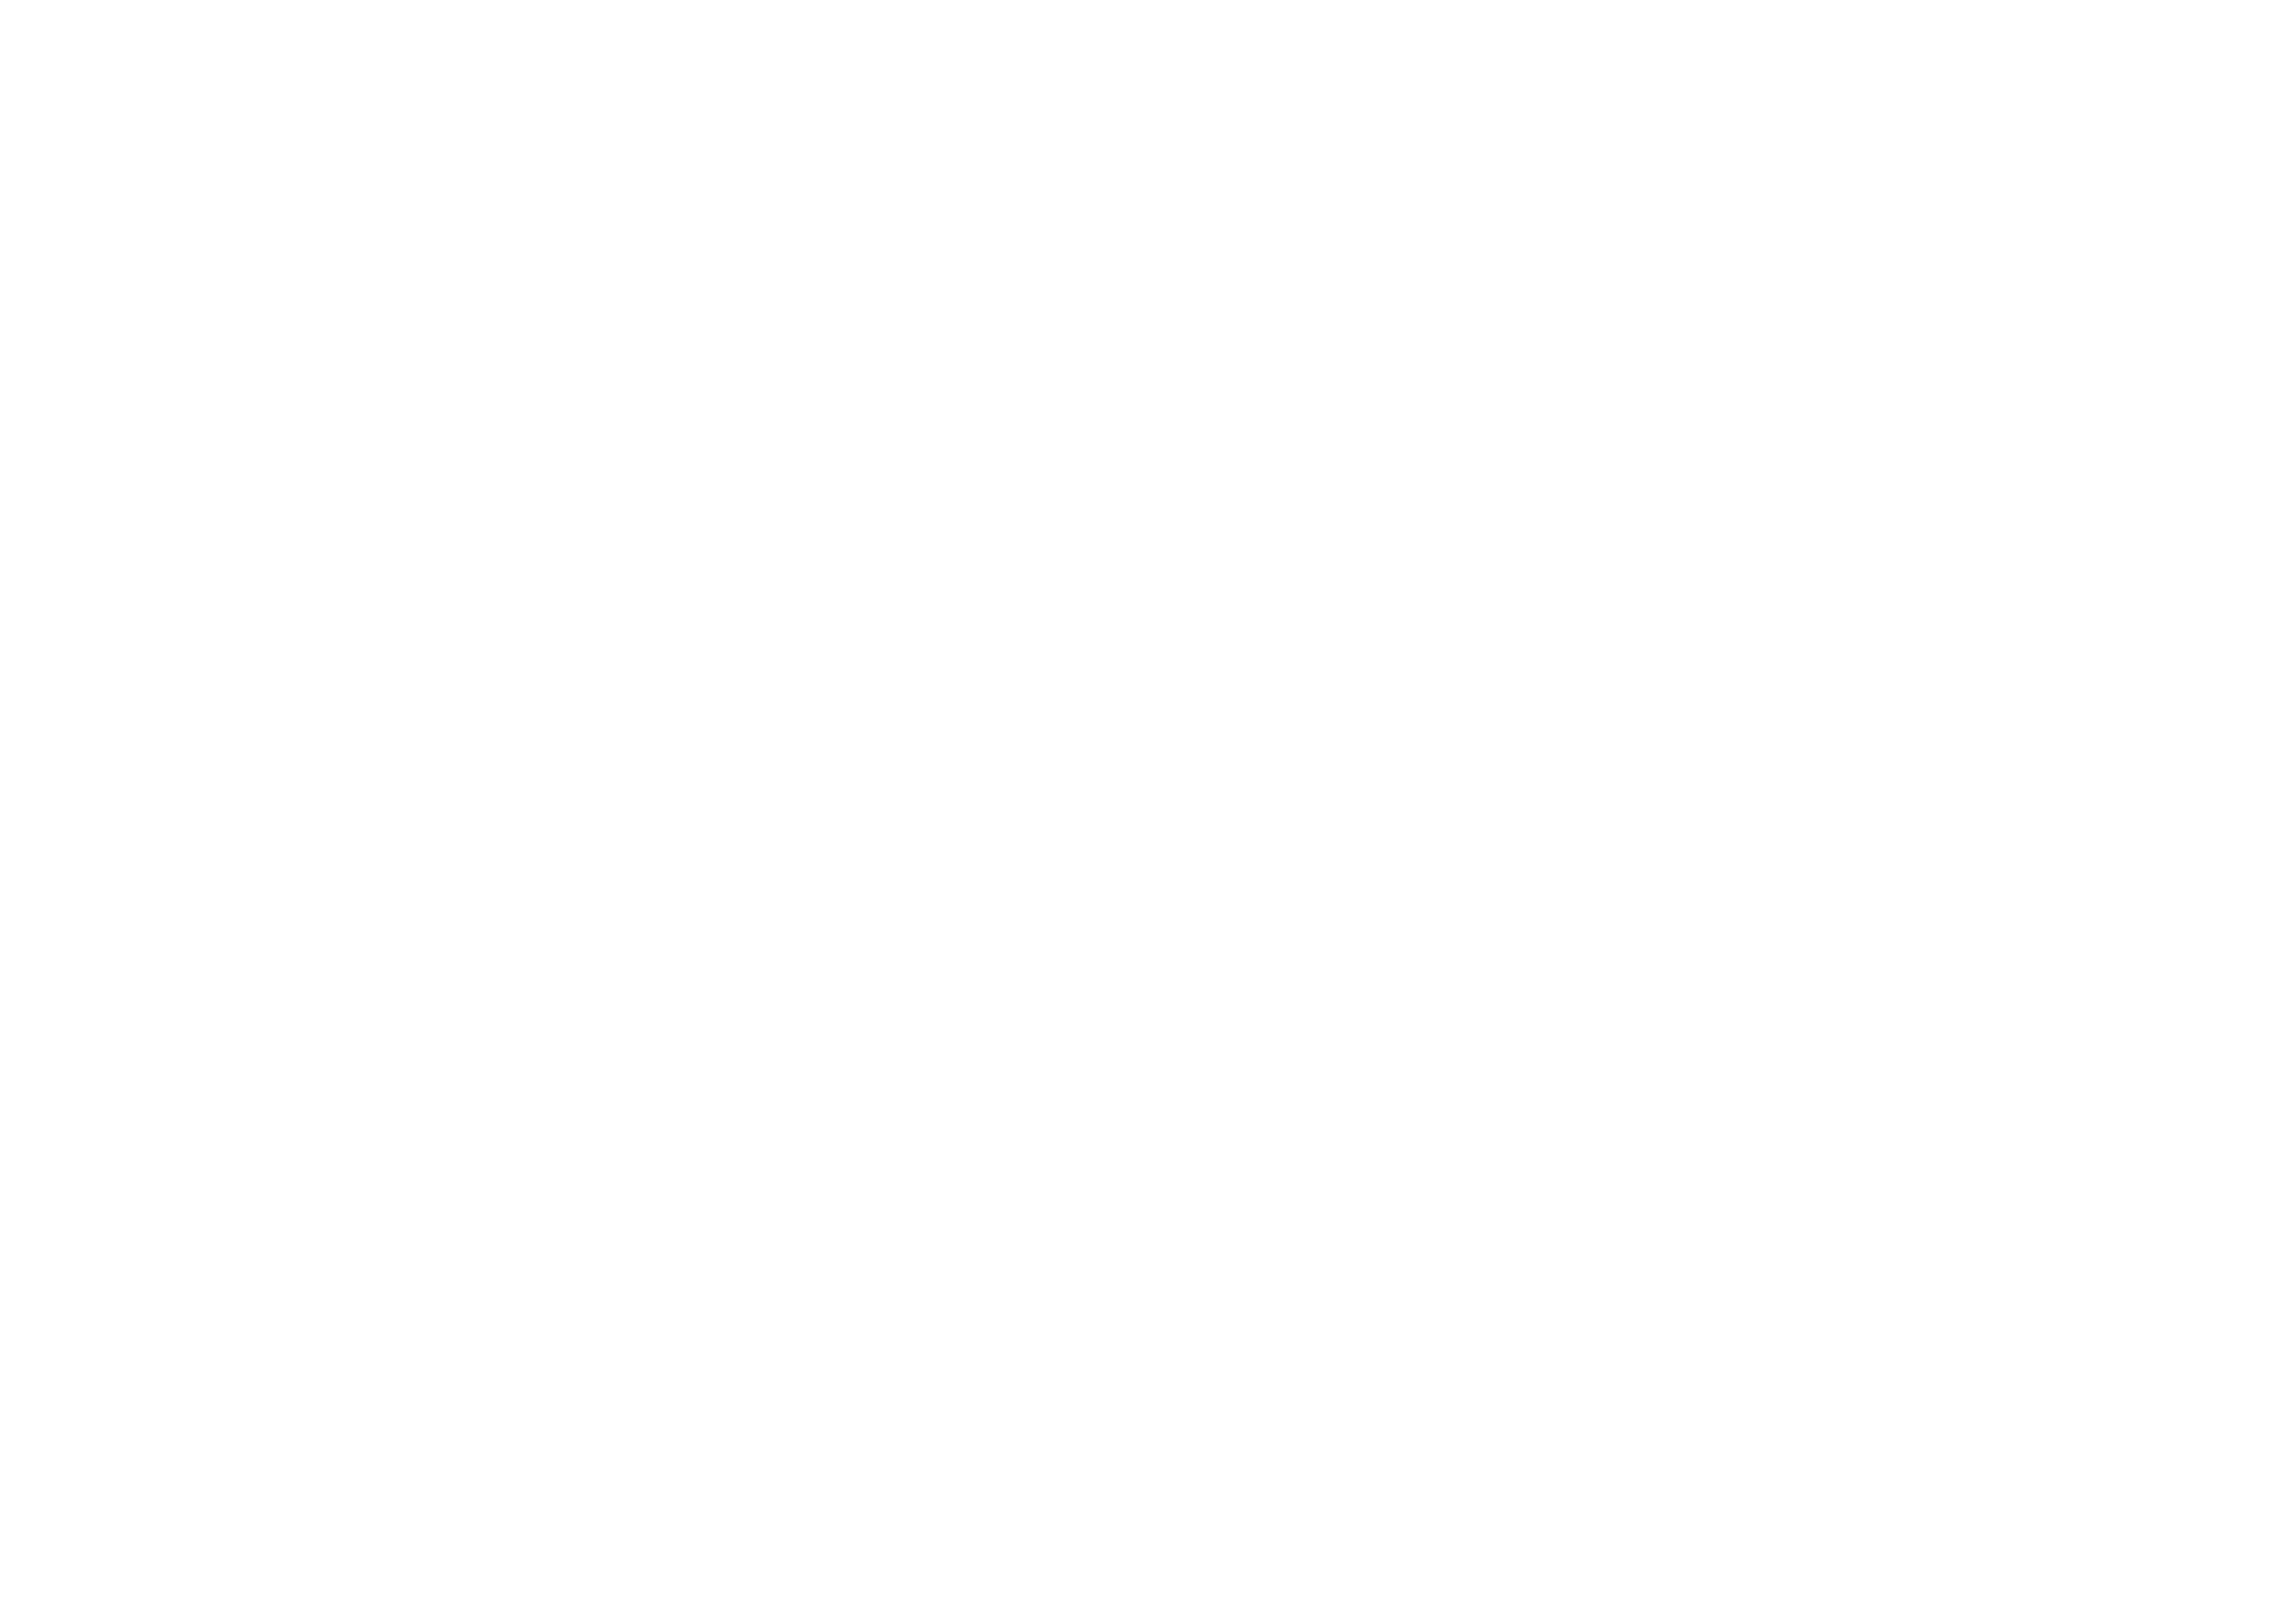 Ville de Matane